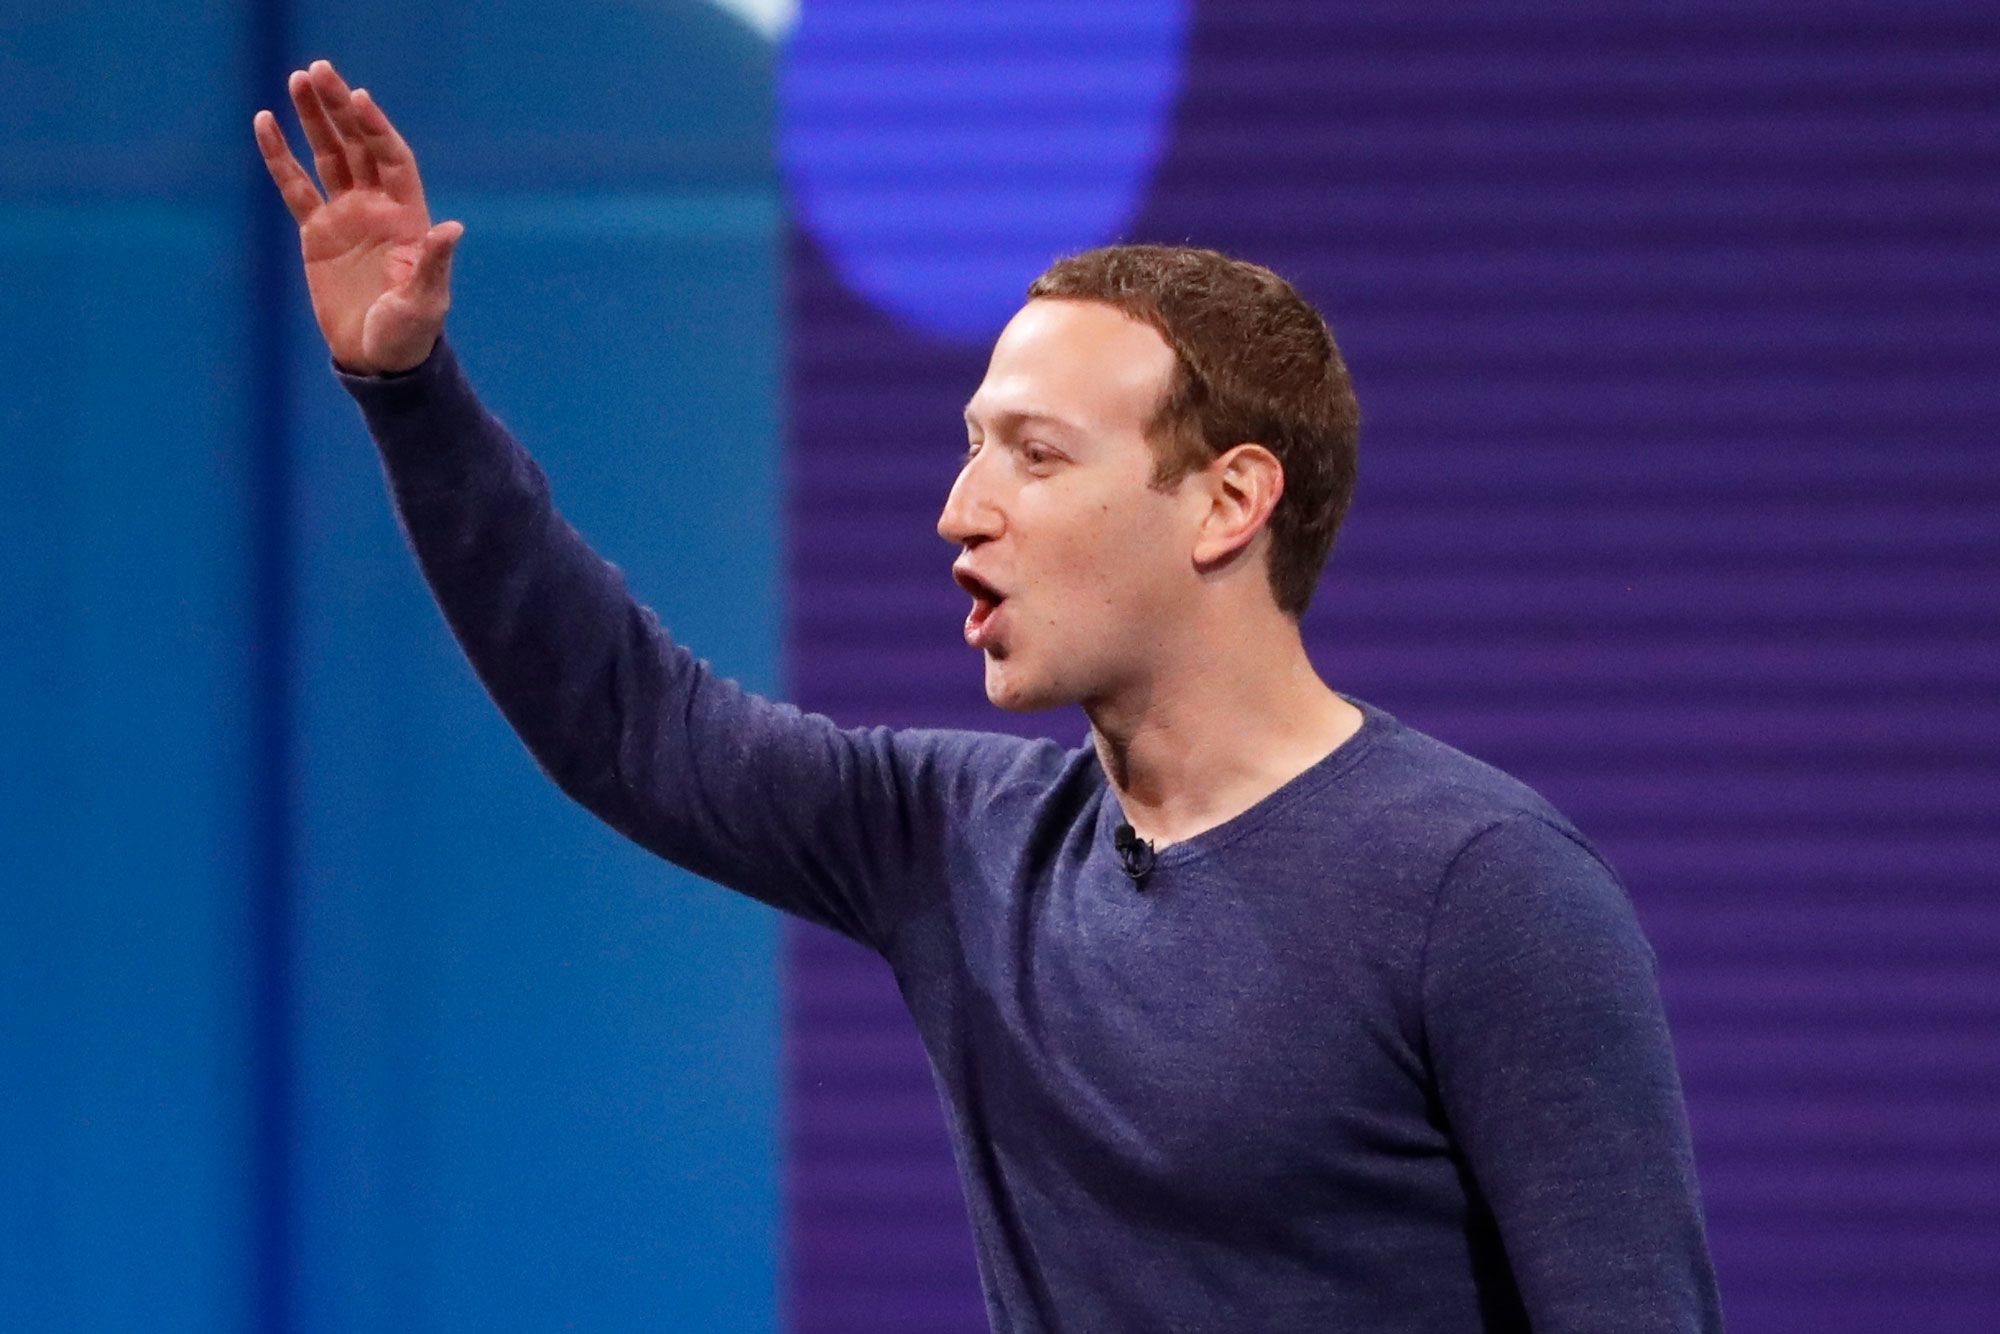 Facebook v5 app coming soon, will focus on privacy: Zuckerberg